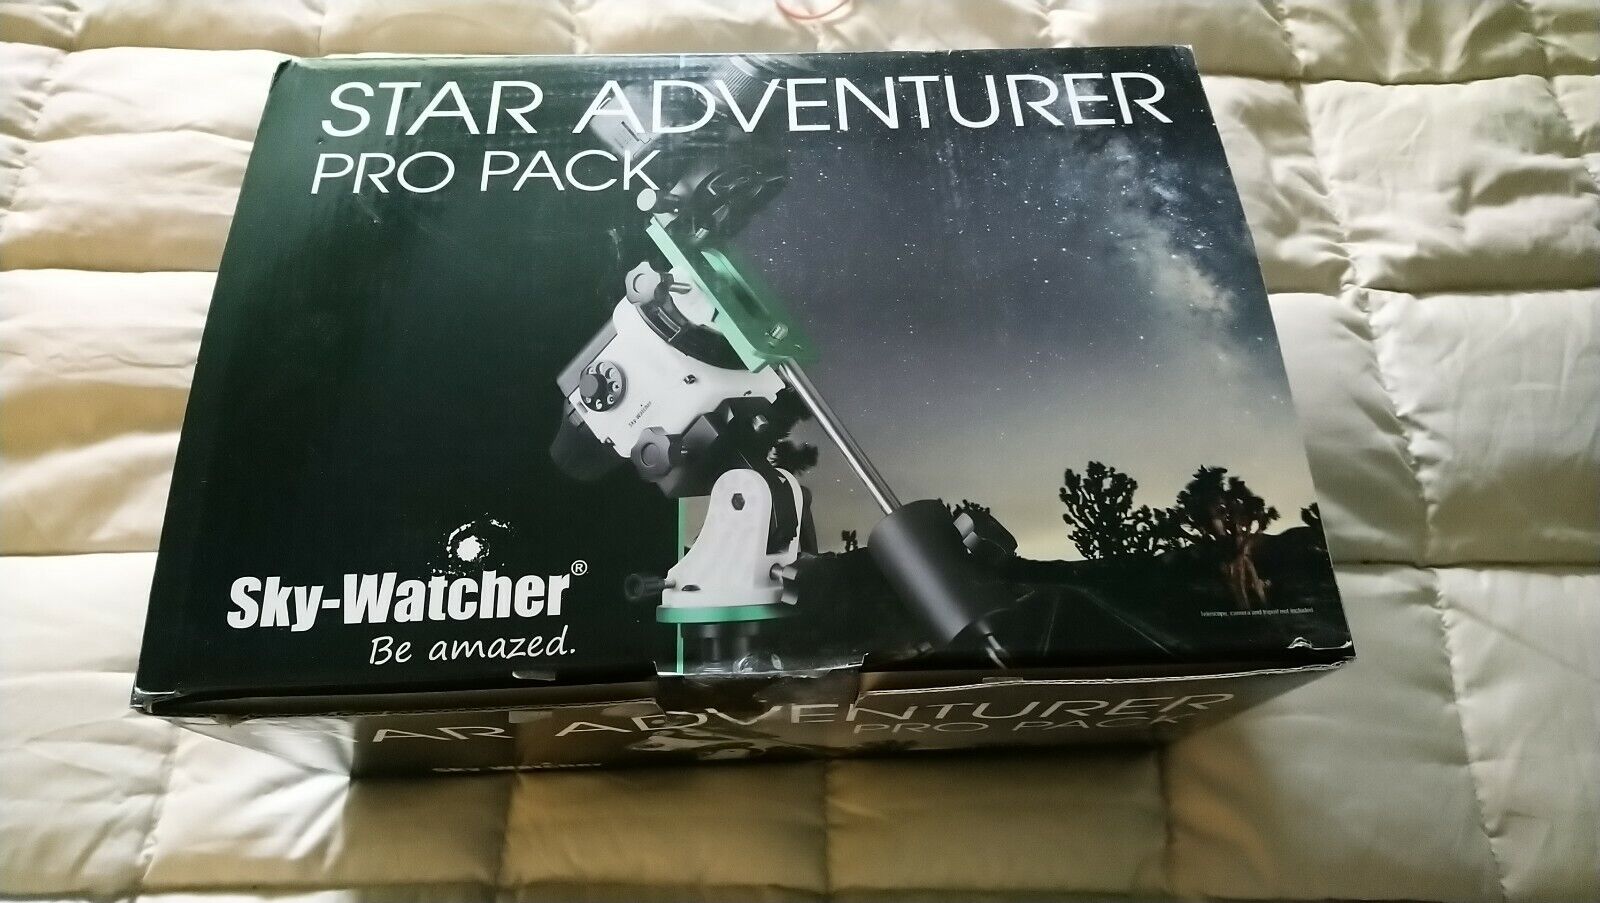 Sky-Watcher S20512 Star Adventurer Pro Pack Open Box but Complete & Unused